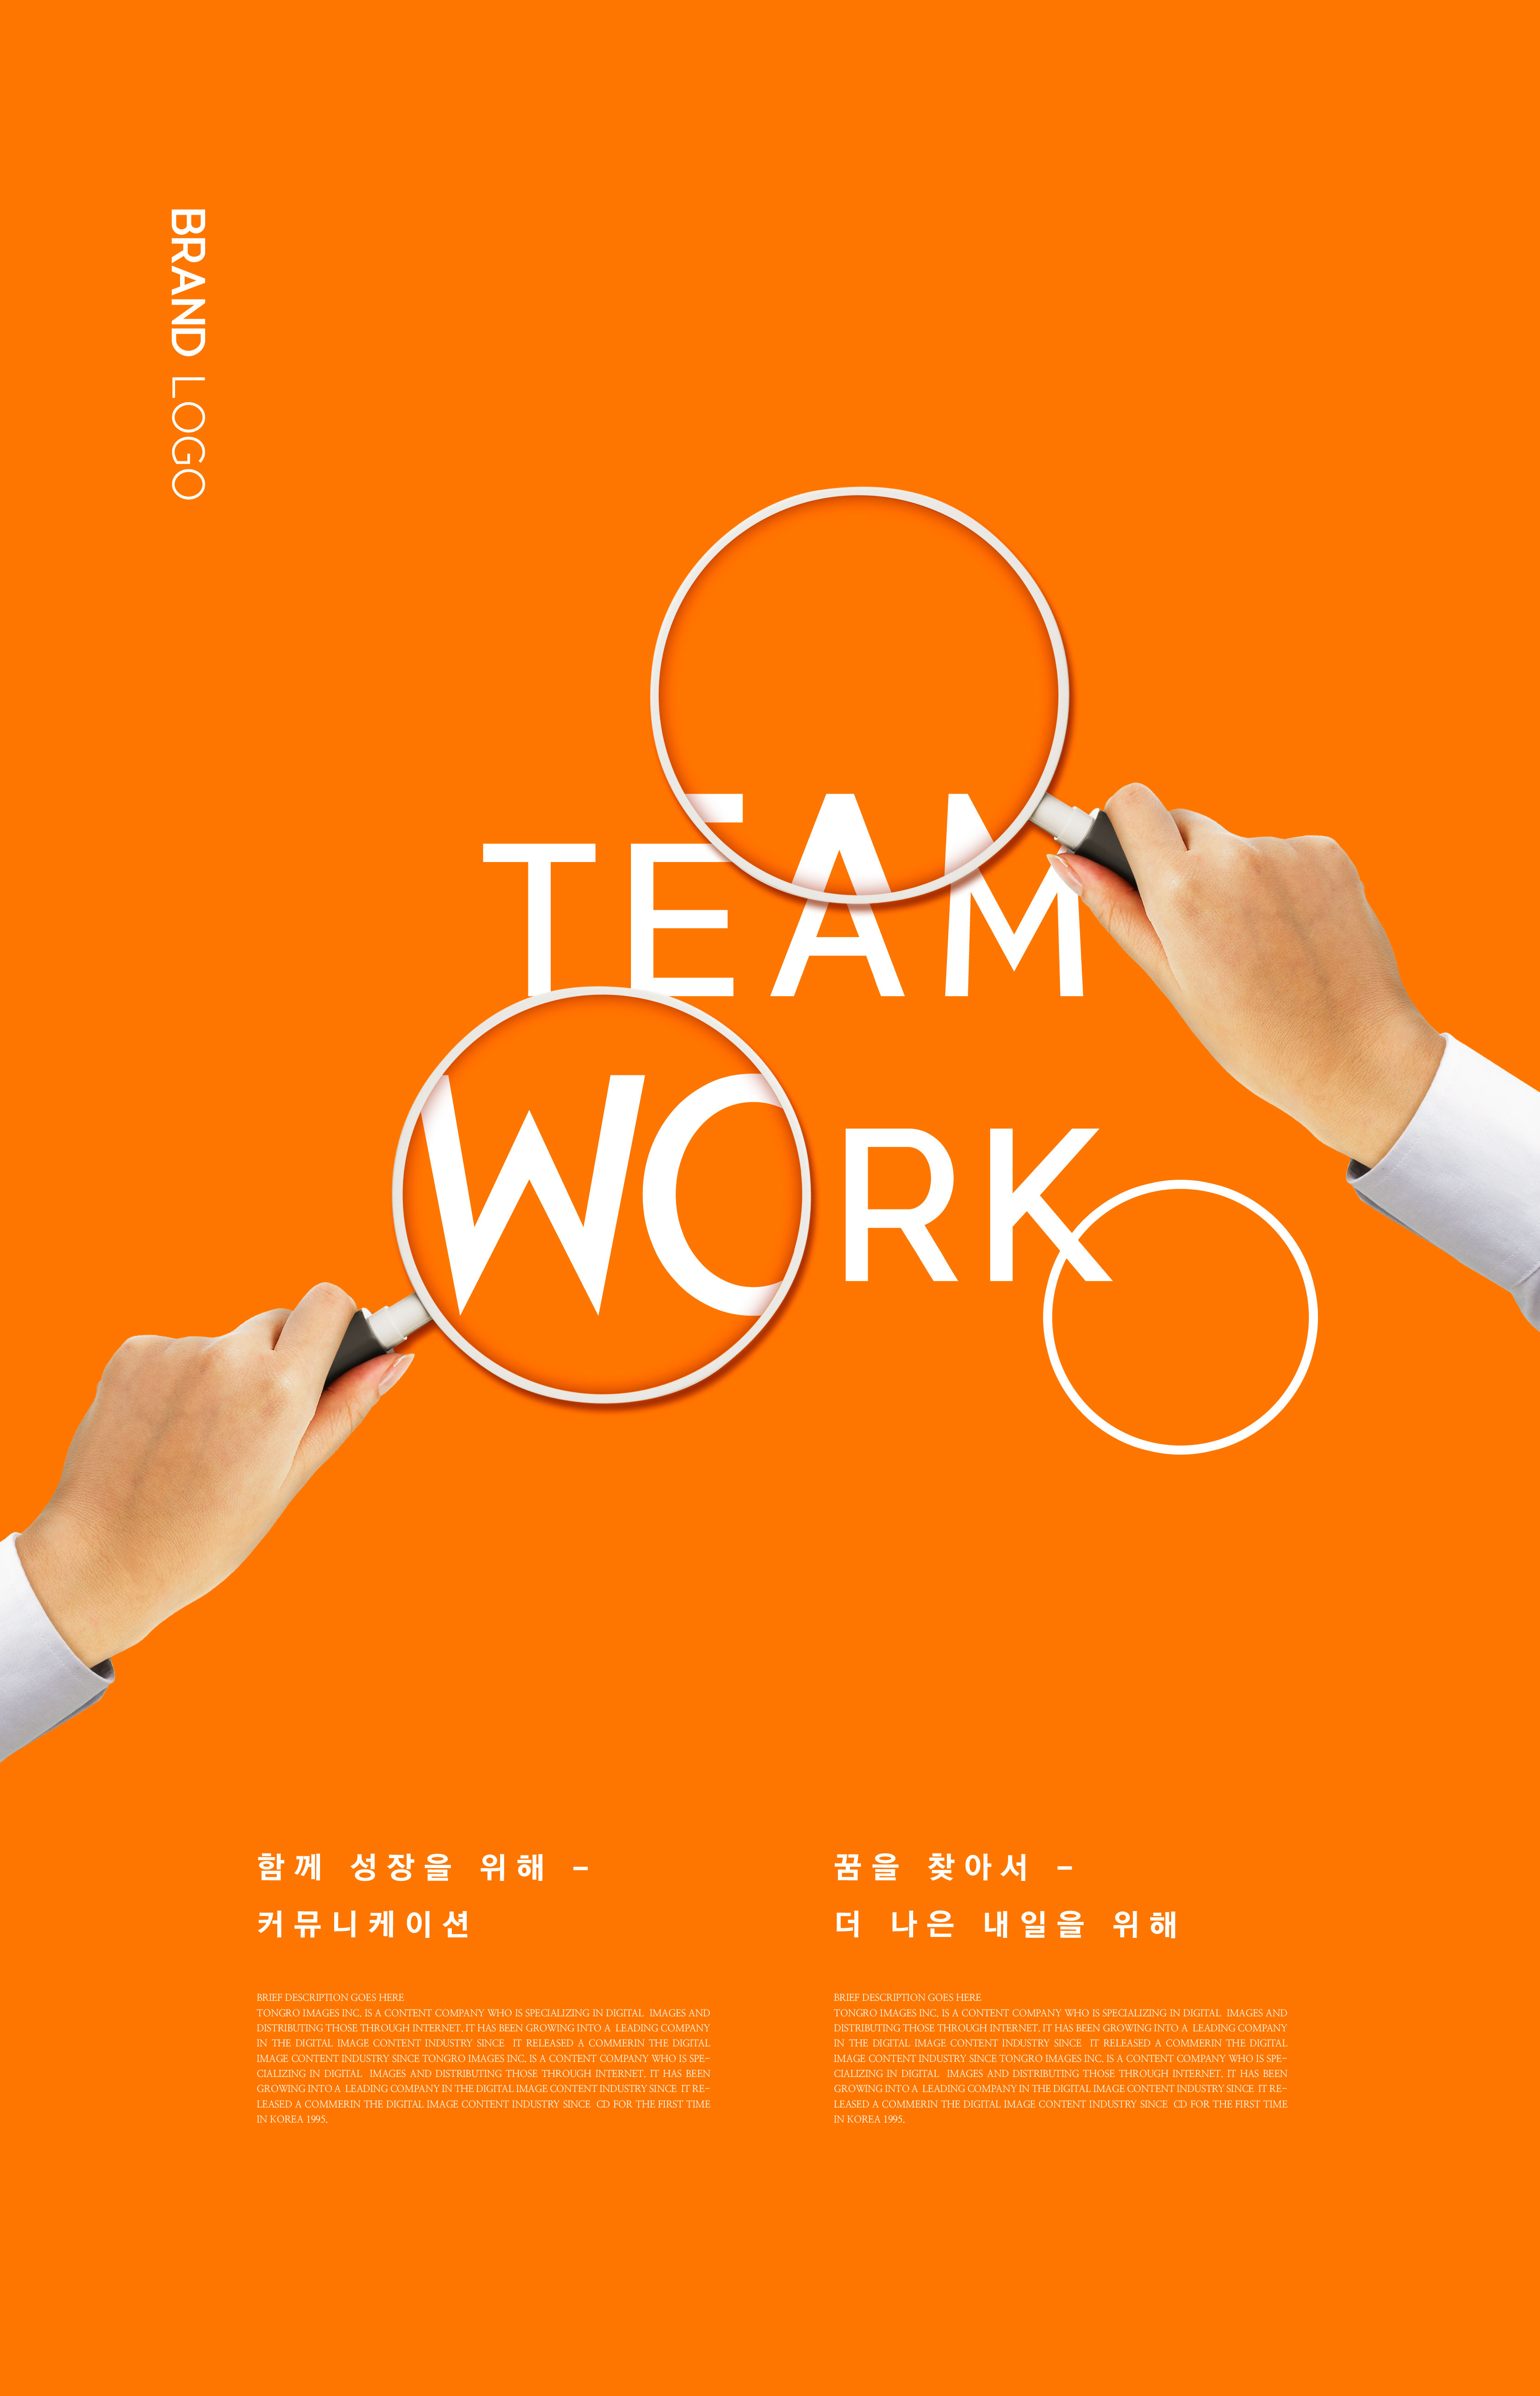 蓝&橙纯色系简约风格团队合作主题海报设计套装[PSD]插图(4)